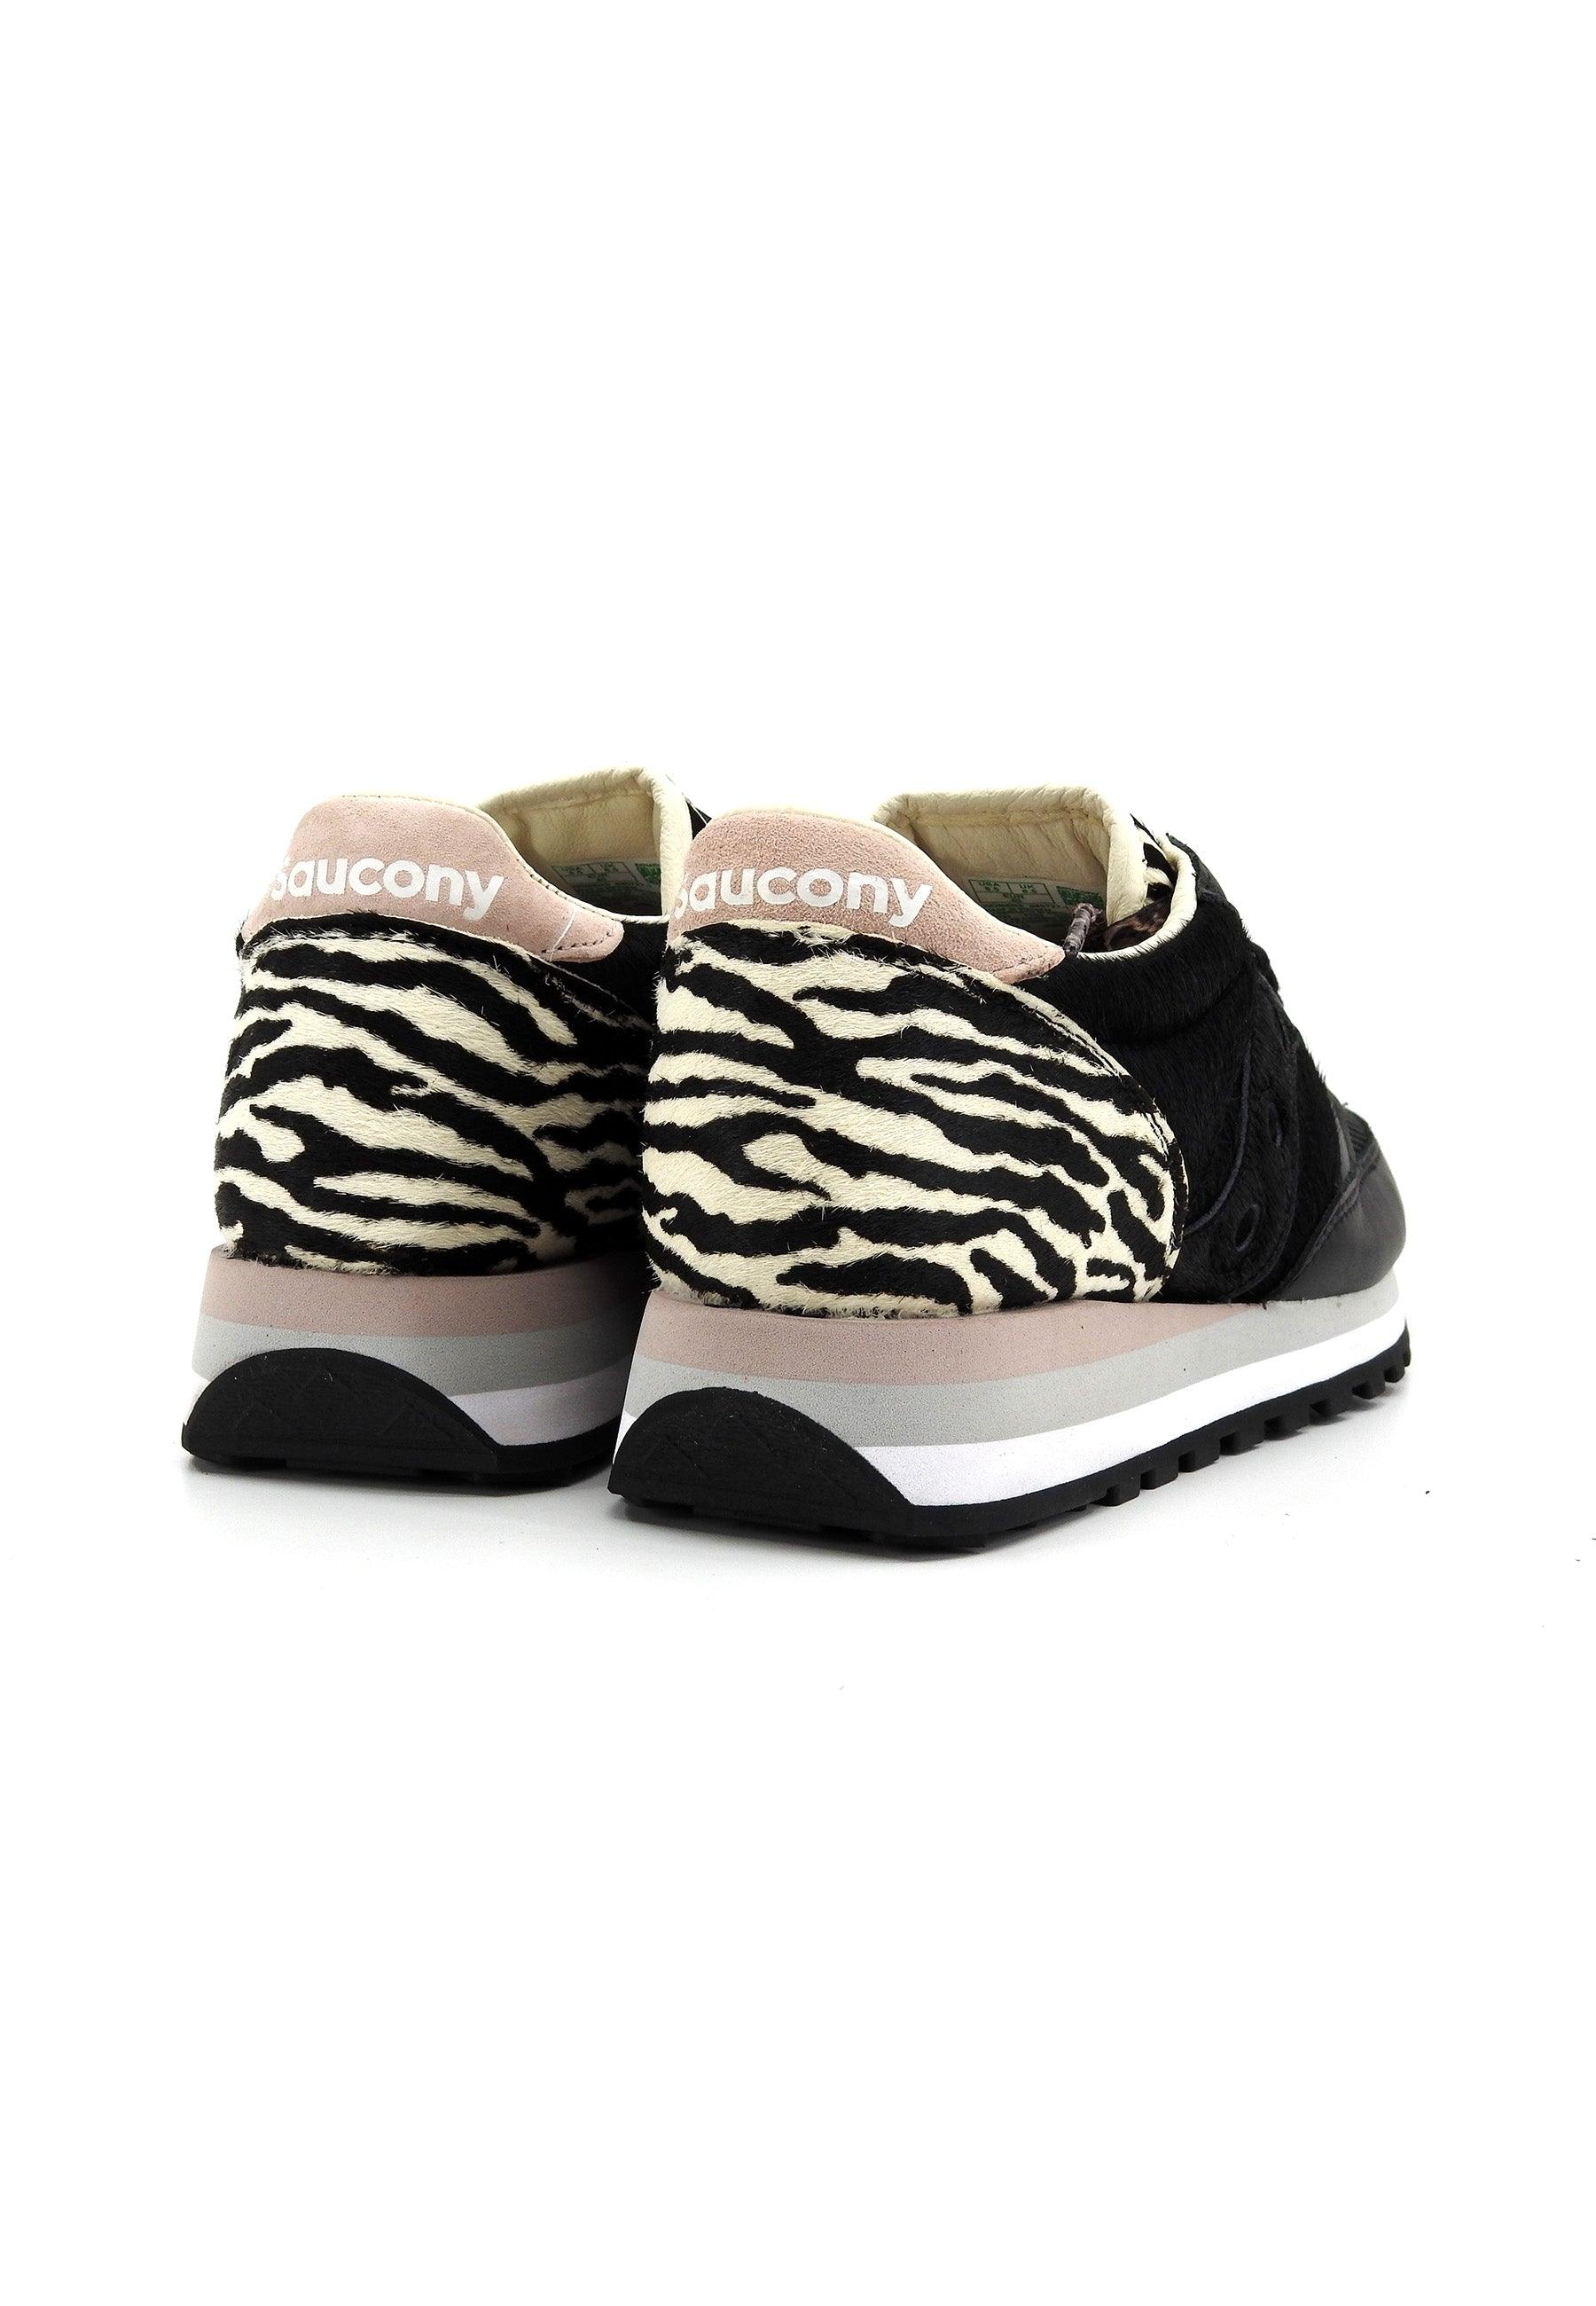 SAUCONY Jazz Triple Sneaker Donna Black Zebra S60727-1 - Sandrini Calzature e Abbigliamento